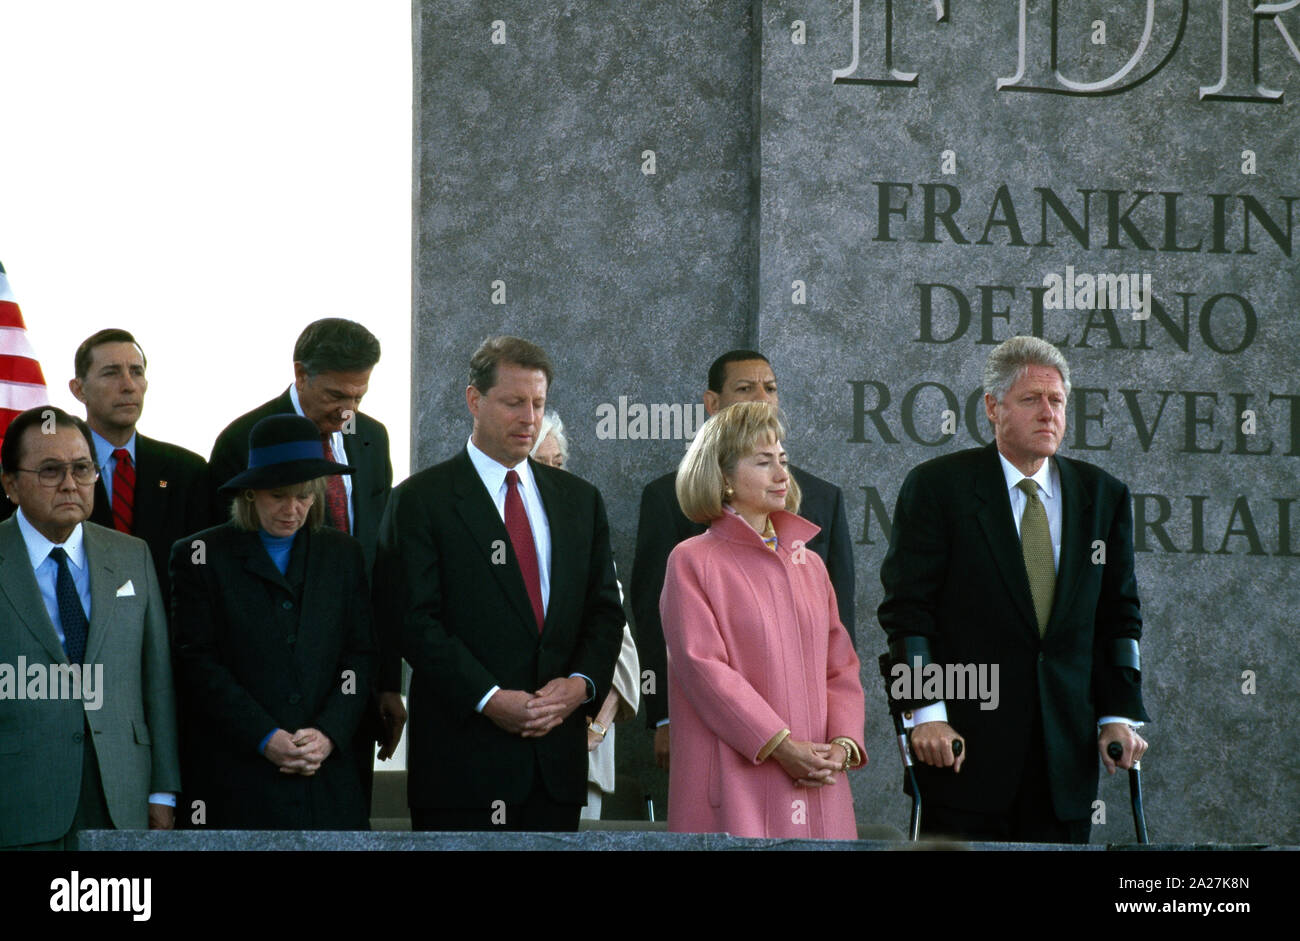 El Presidente Bill Clinton, la Primera Dama, Hillary Clinton, el Vicepresidente Al Gore y su esposa Tipper, y el Senador Daniel Inouye, de derecha a izquierda, en 1997 en la dedicación de la Franklin Delano Roosevelt Memorial en Washington, D.C. Foto de stock